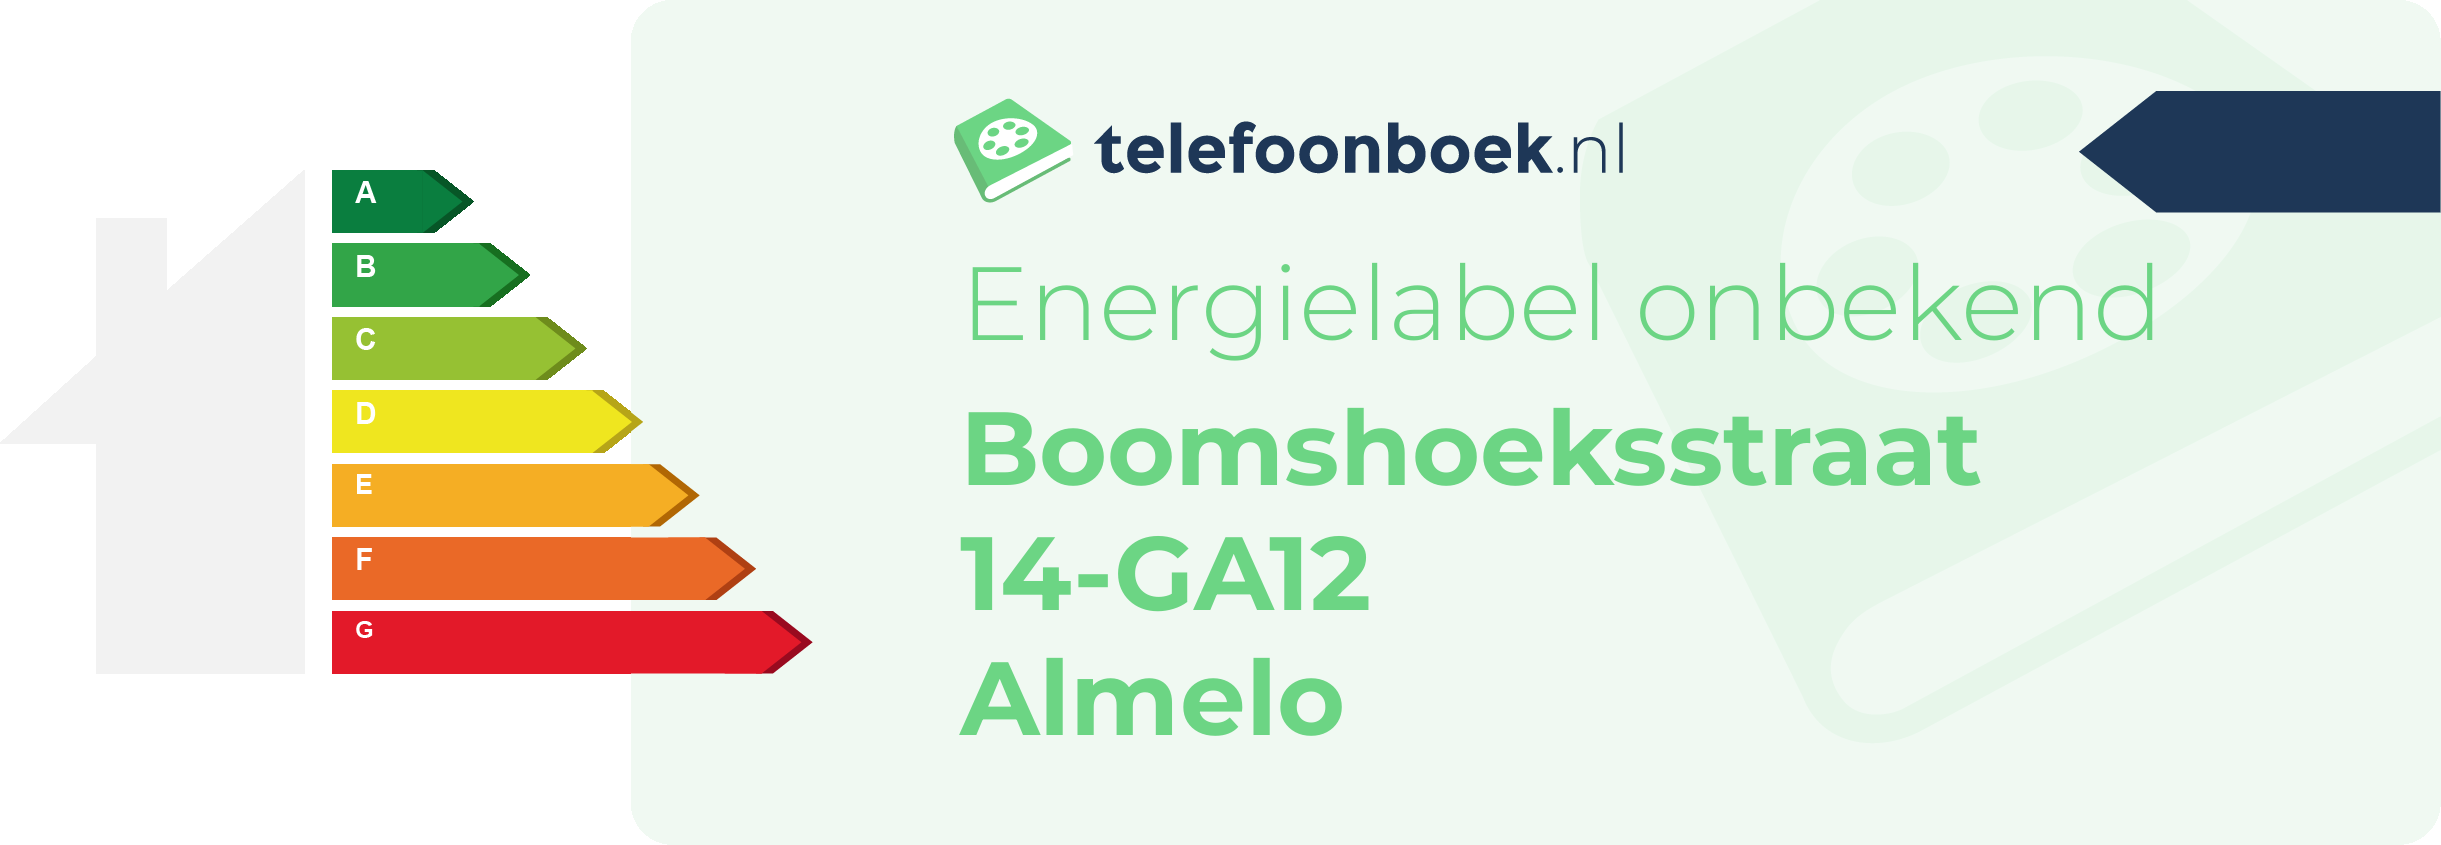 Energielabel Boomshoeksstraat 14-GA12 Almelo